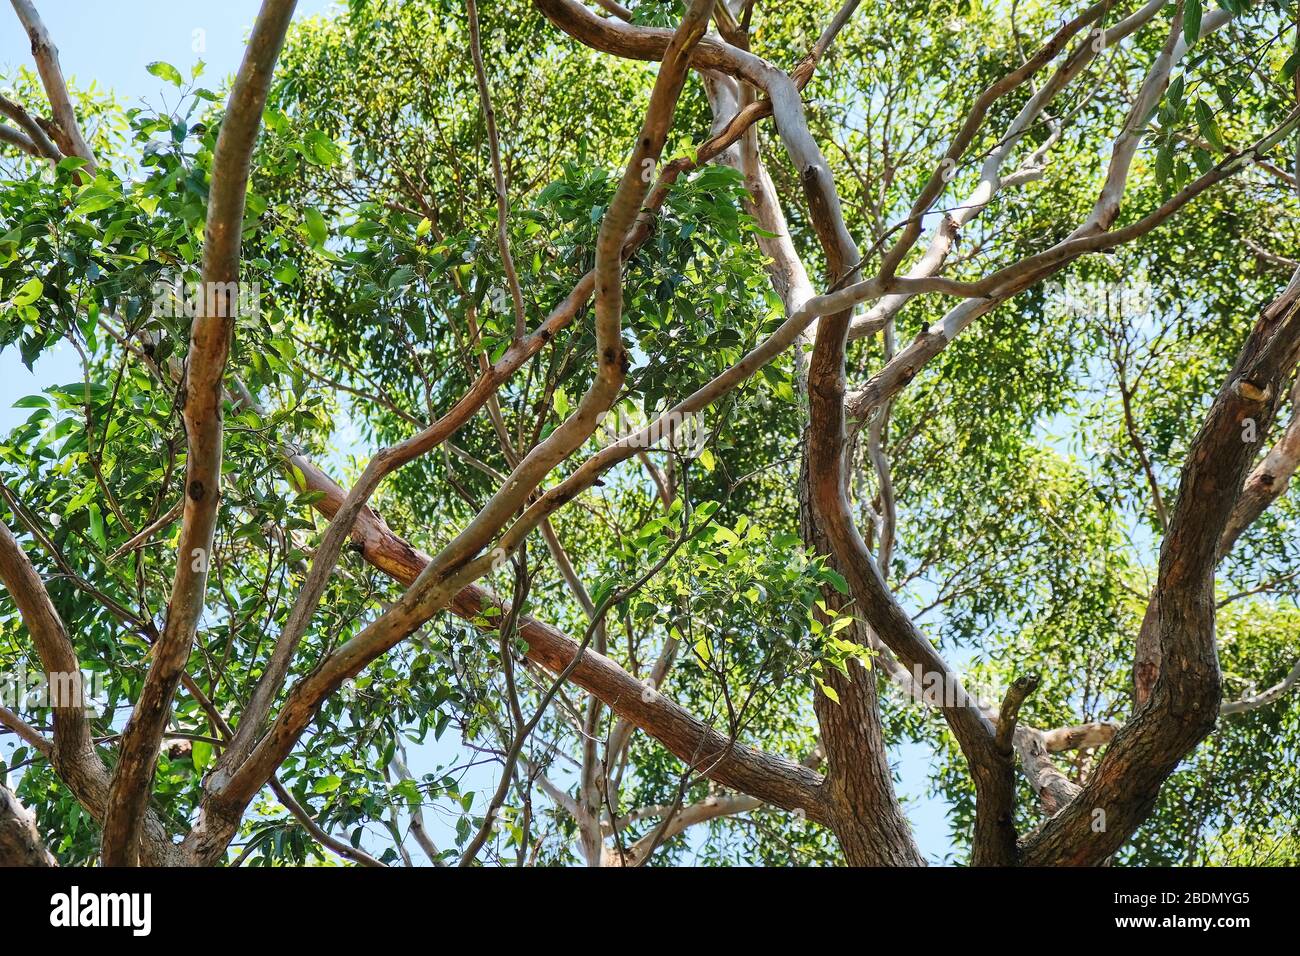 En regardant dans la canopée d'un groupe d'eucalyptus, de branches et de feuilles. Banque D'Images